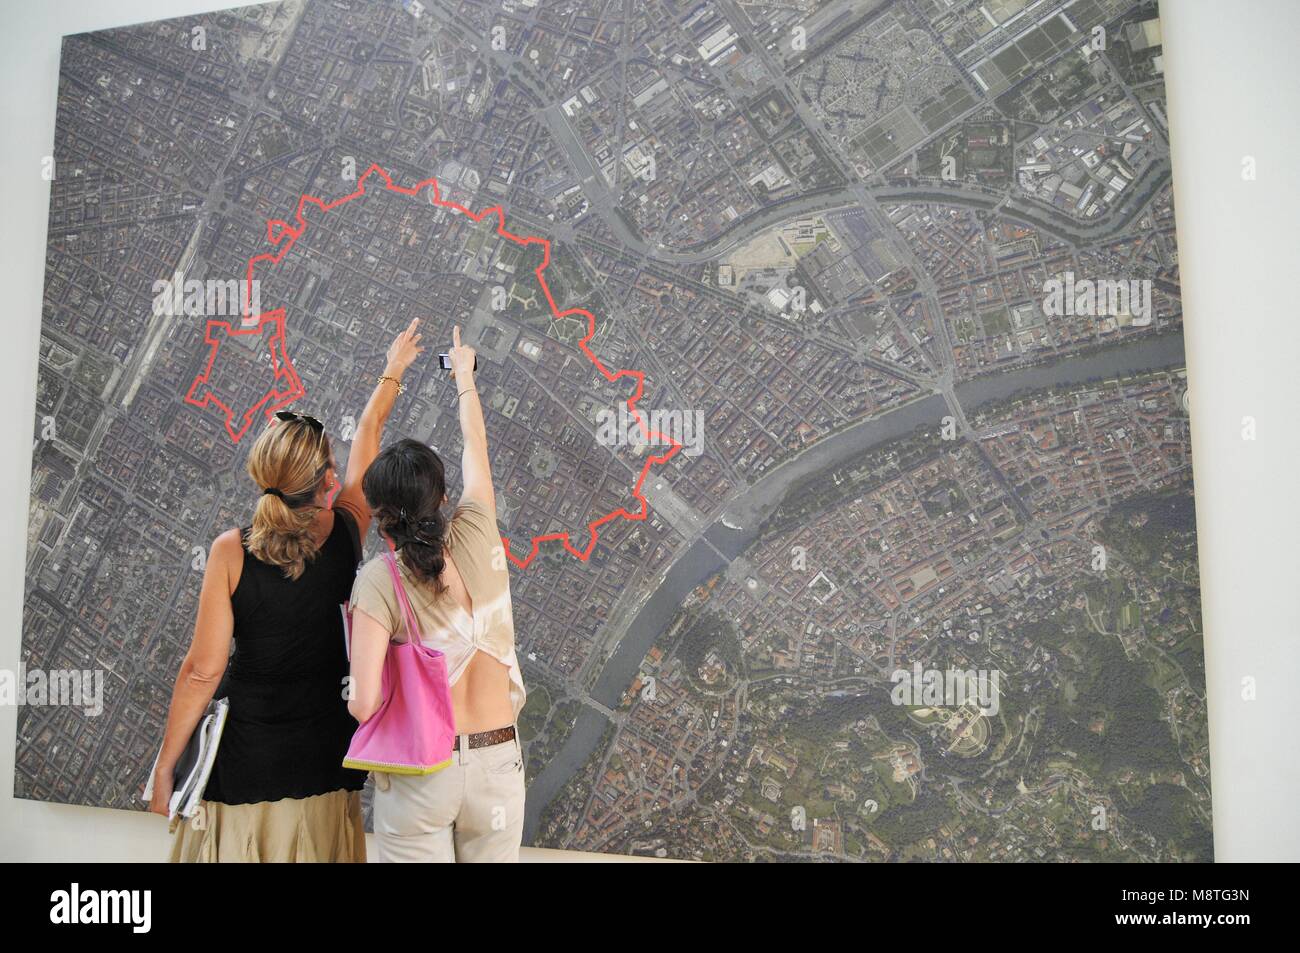 Zwei Frauen stehen vor riesigen reklametafeln Luftaufnahme der Stadt Erweiterung im Vergleich zu den alten Zeiten durch die Roten stratch Turin signalisiert Stockfoto